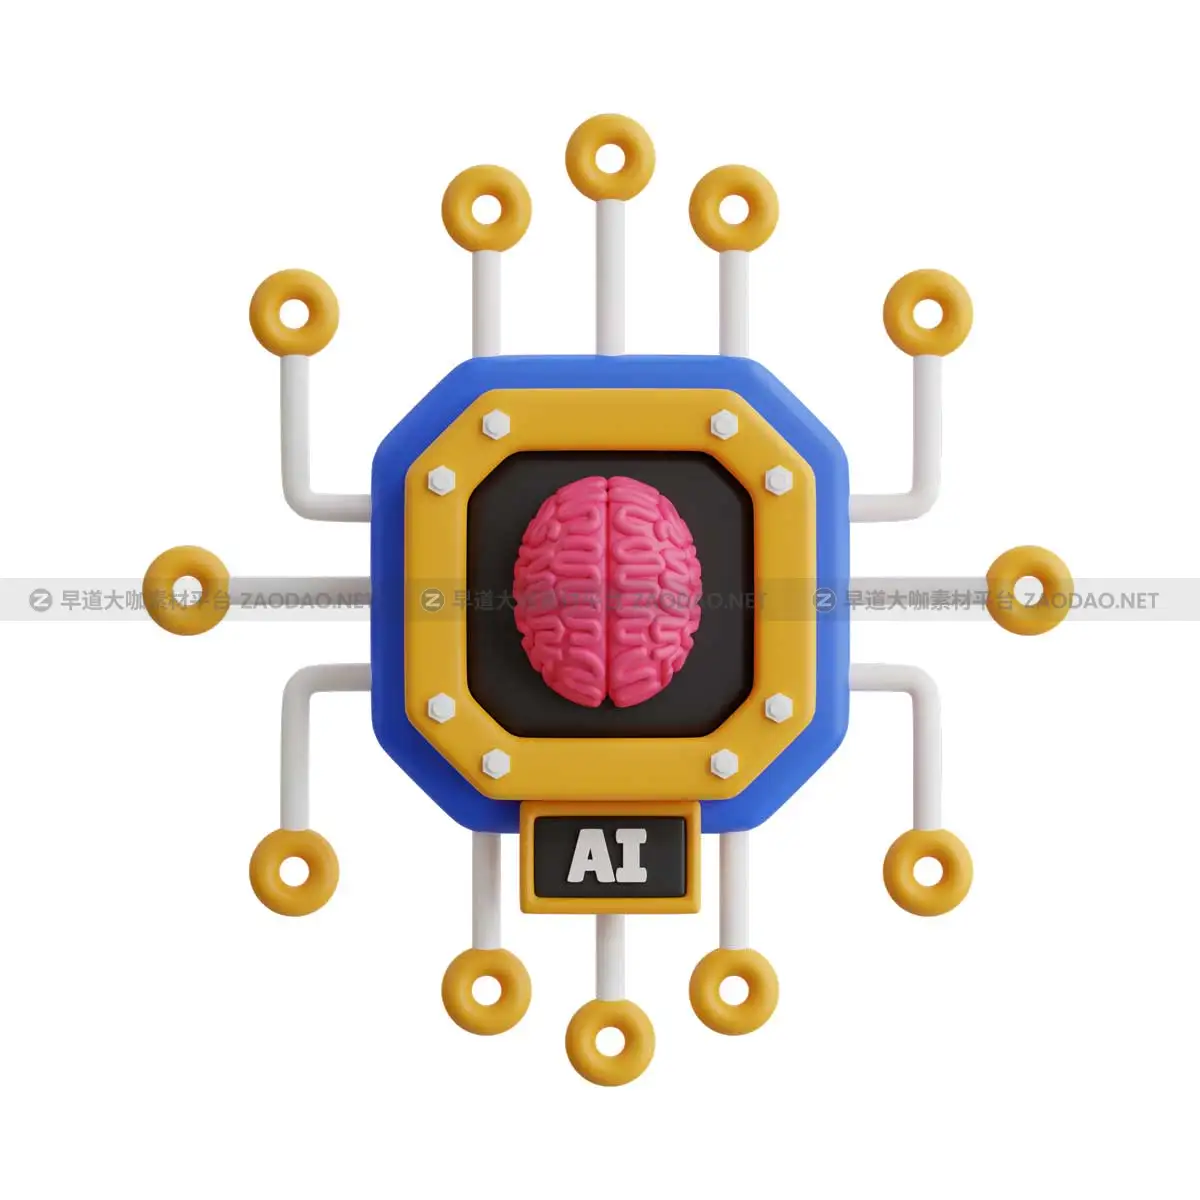 20款未来科幻AI人工智能汽车无人机飞船3D图标Icons设计素材合集 Future Things 3D Icon Pack插图4